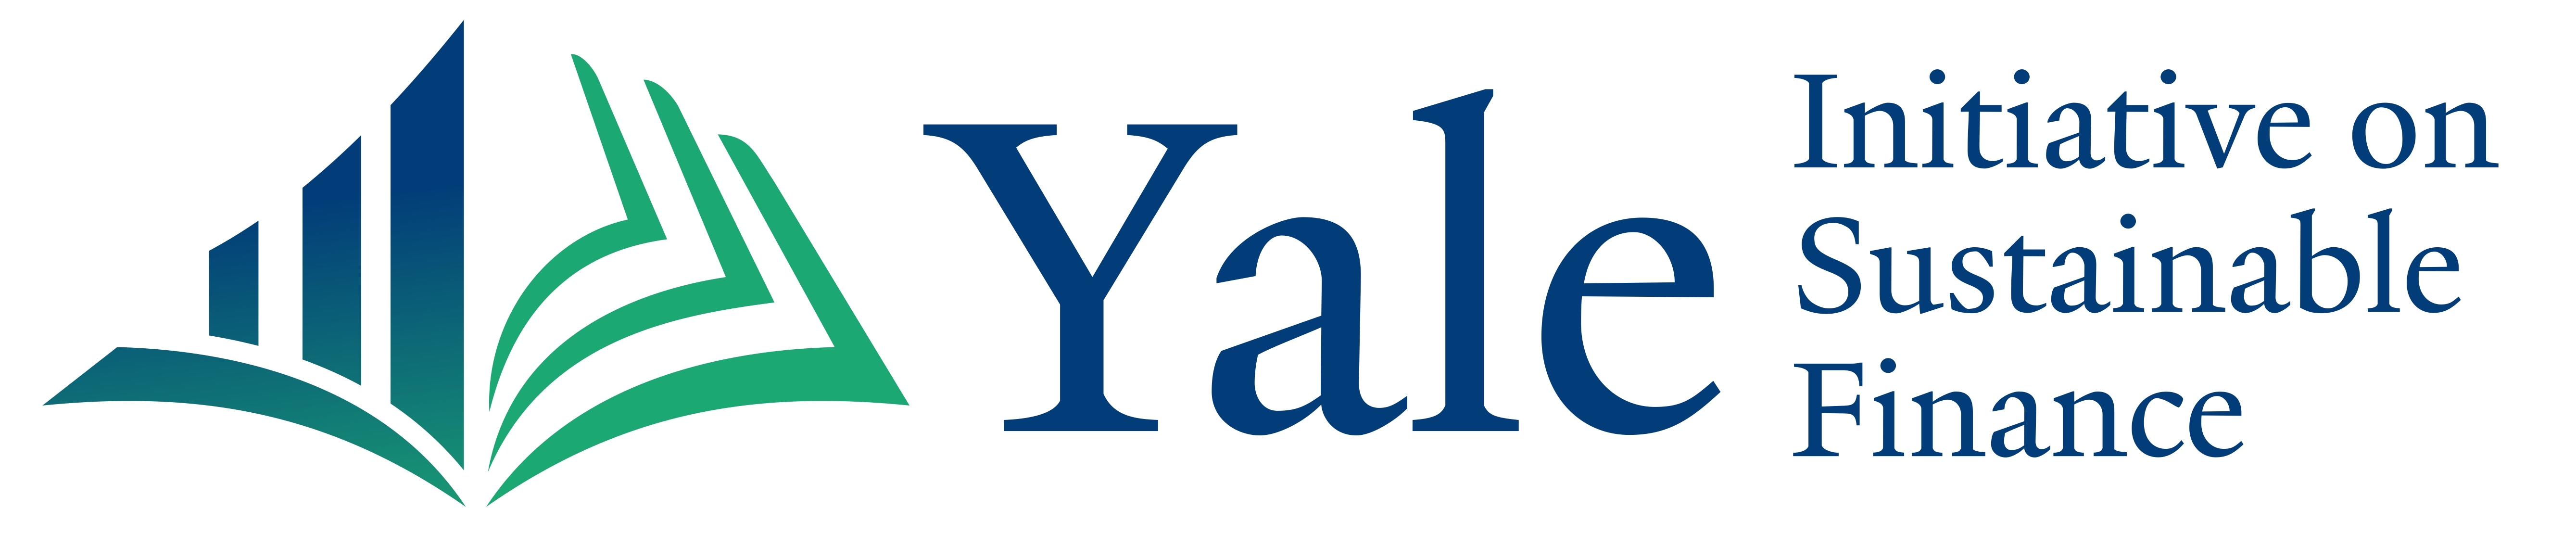 Yale Initiative on Sustainable Finance Logo